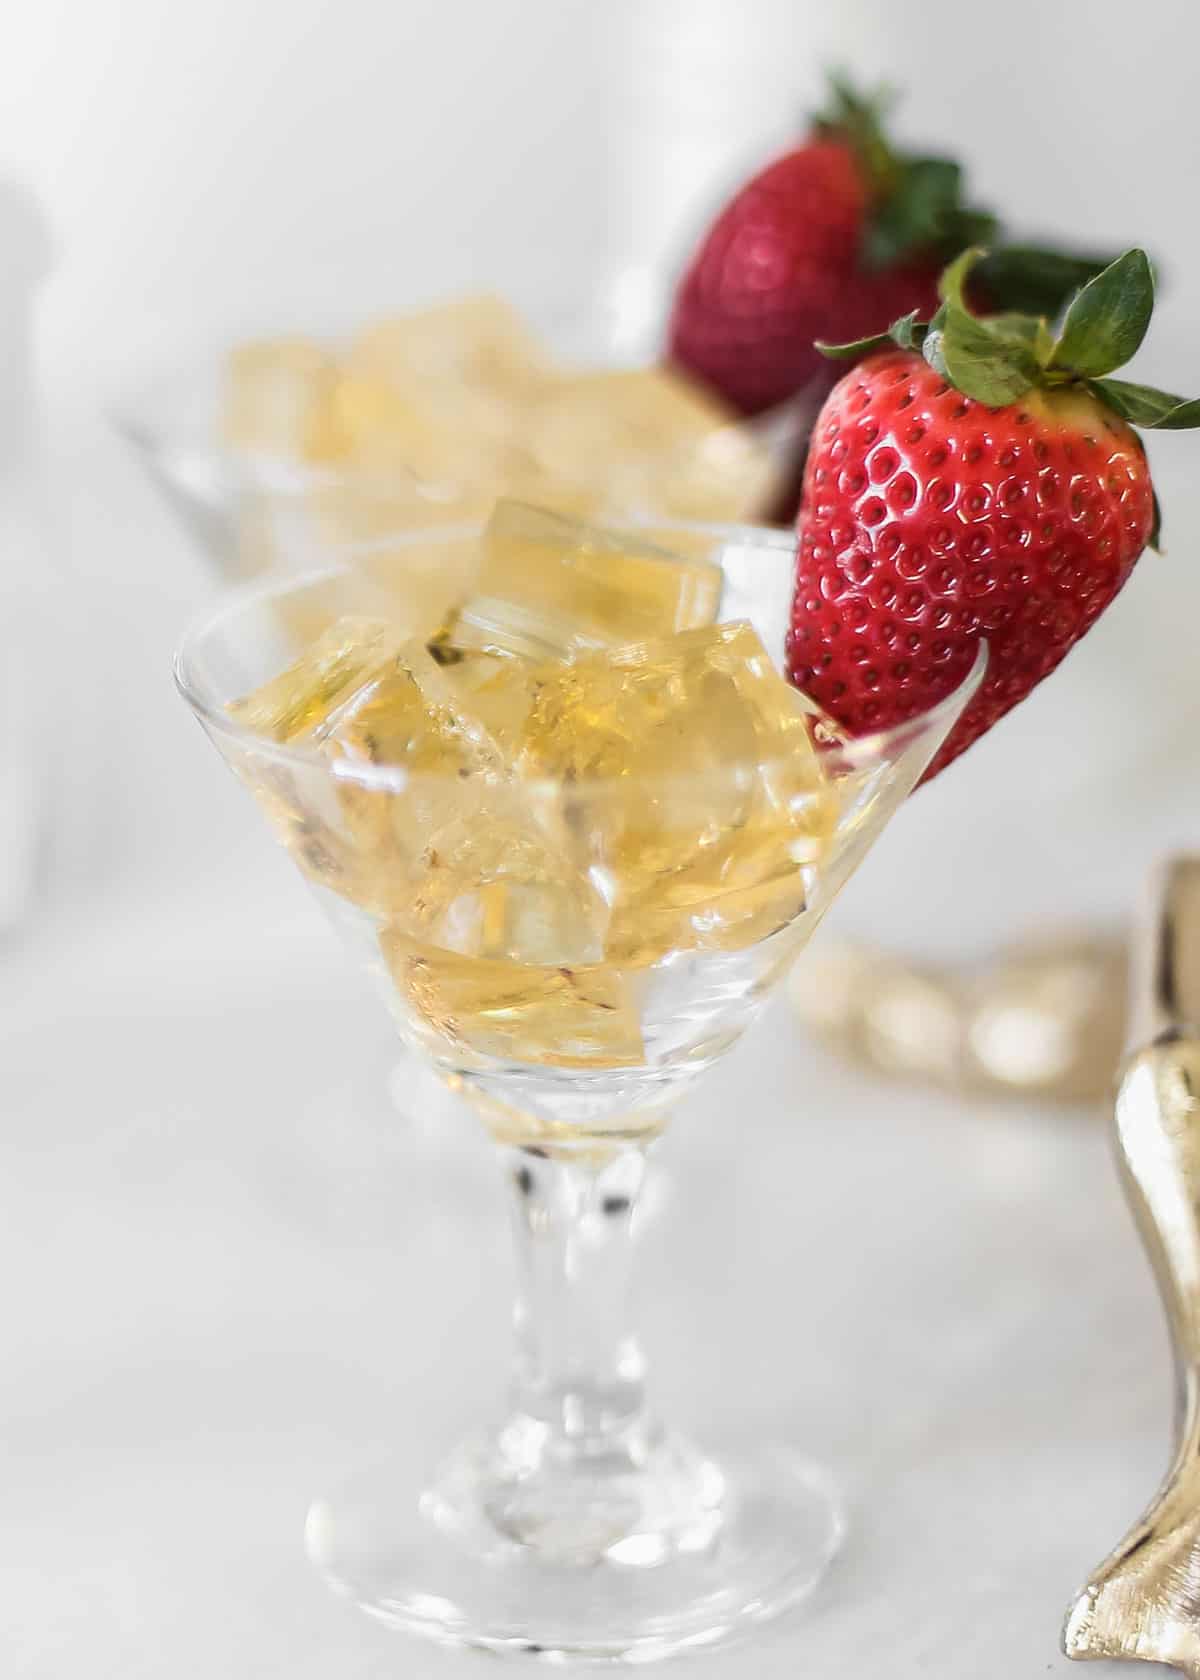 golden colored jello squares in mini martini glasses with strawberry garnish.